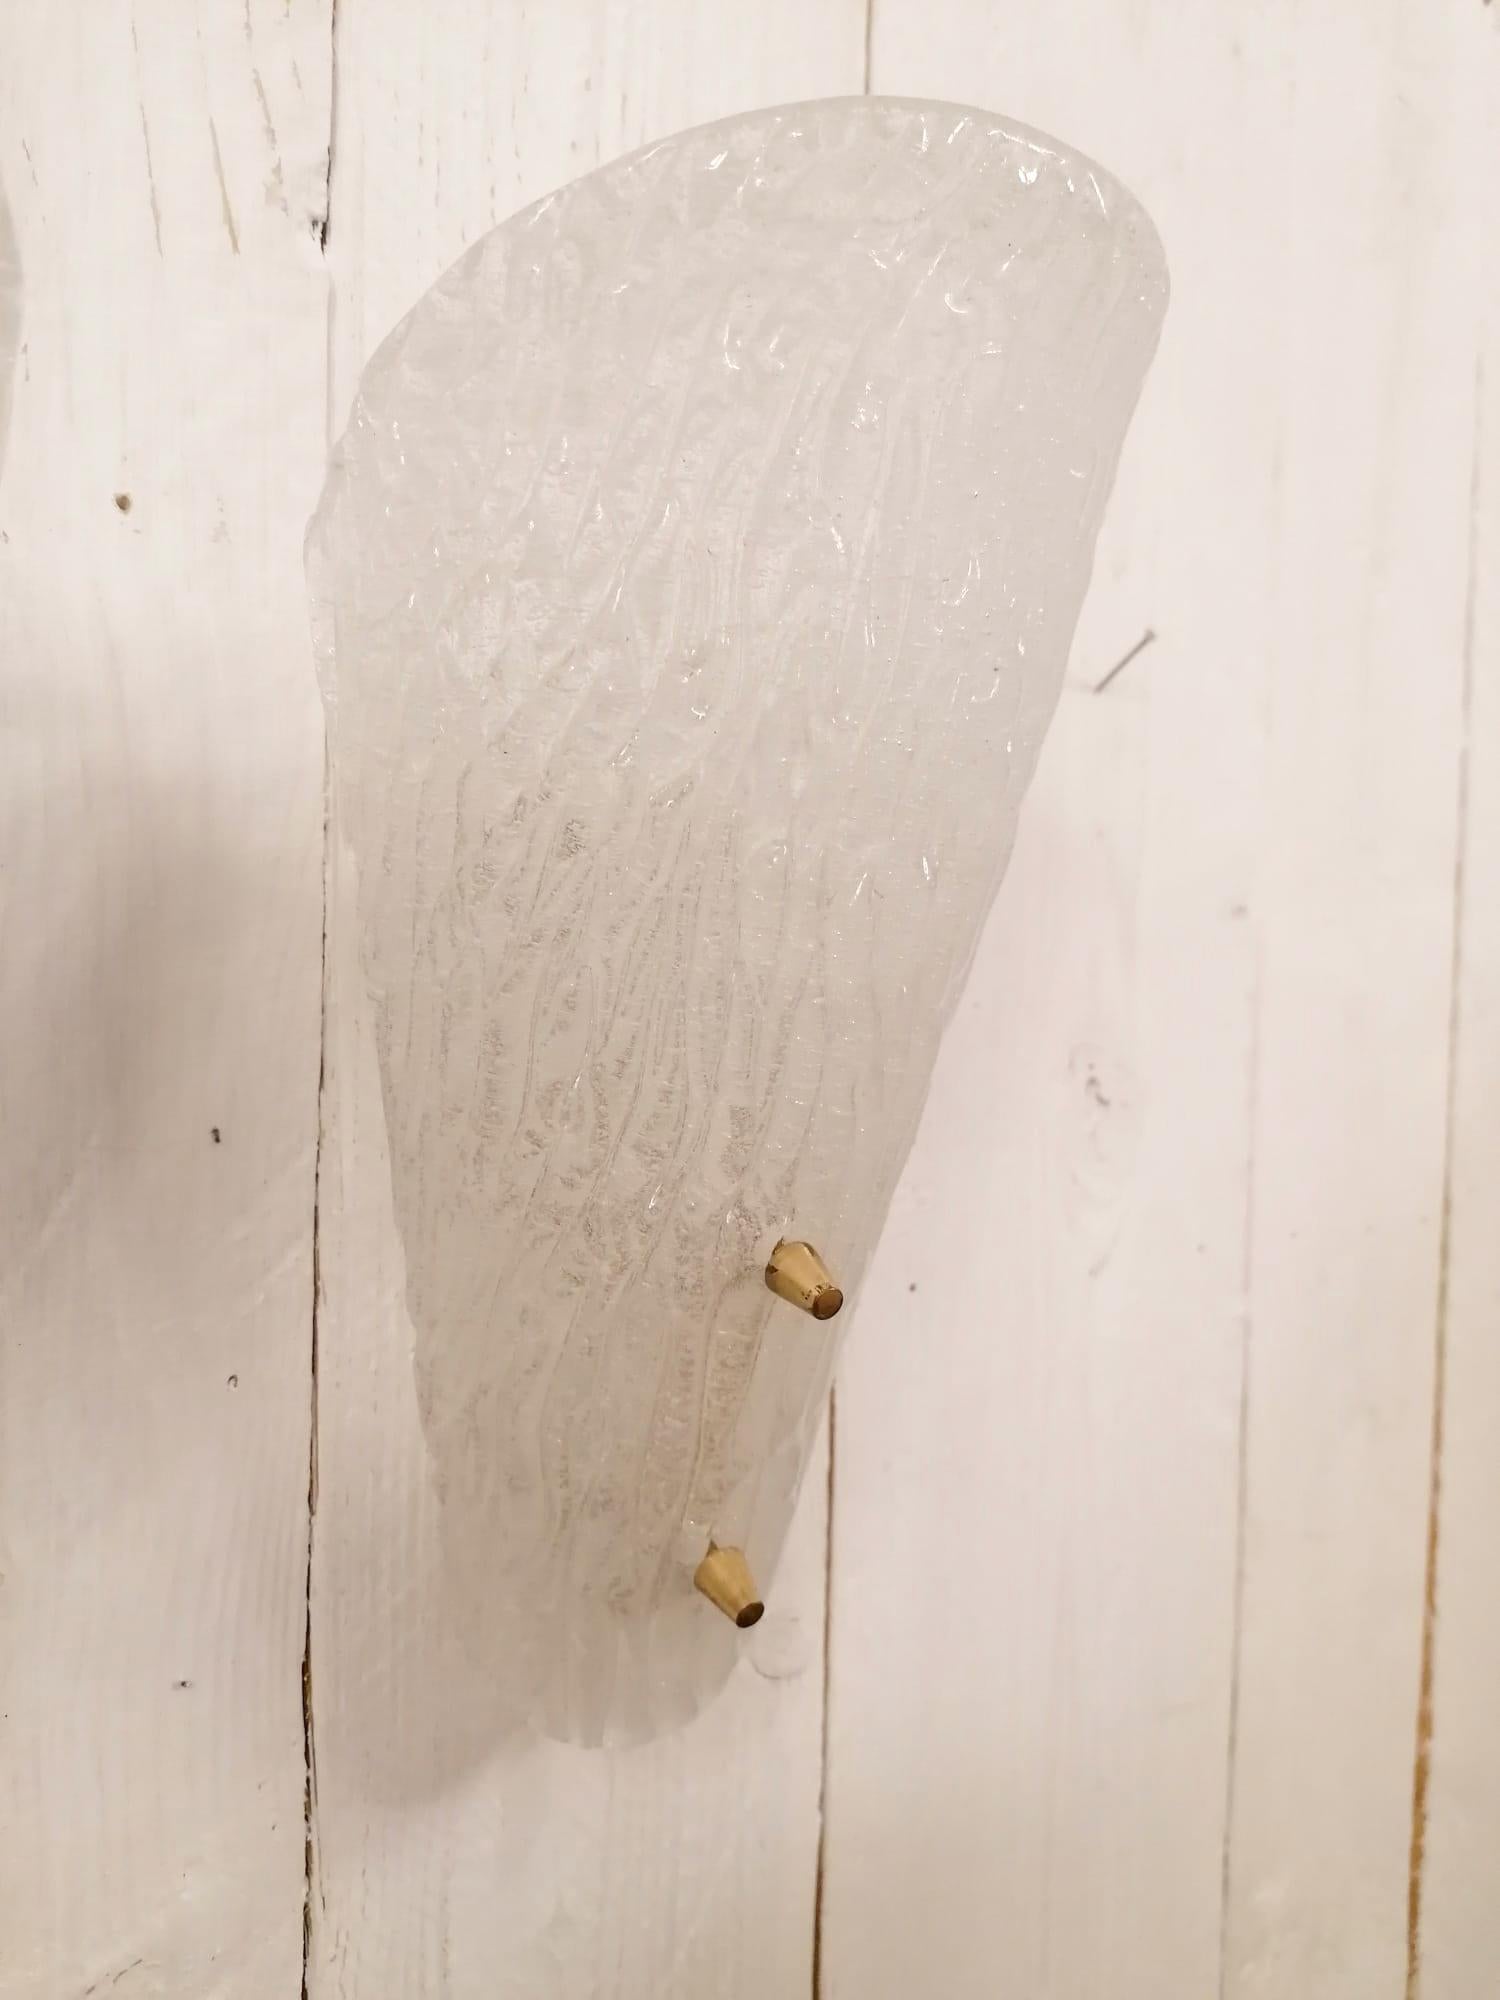 Kalmar Wandleuchter aus den 1950er Jahren, Messingrahmen mit Eisglasschirm, montiert mit 2 Messingpfeilen am Rahmen.
Voll funktionsfähig.
Preis pro Satz von zwei
